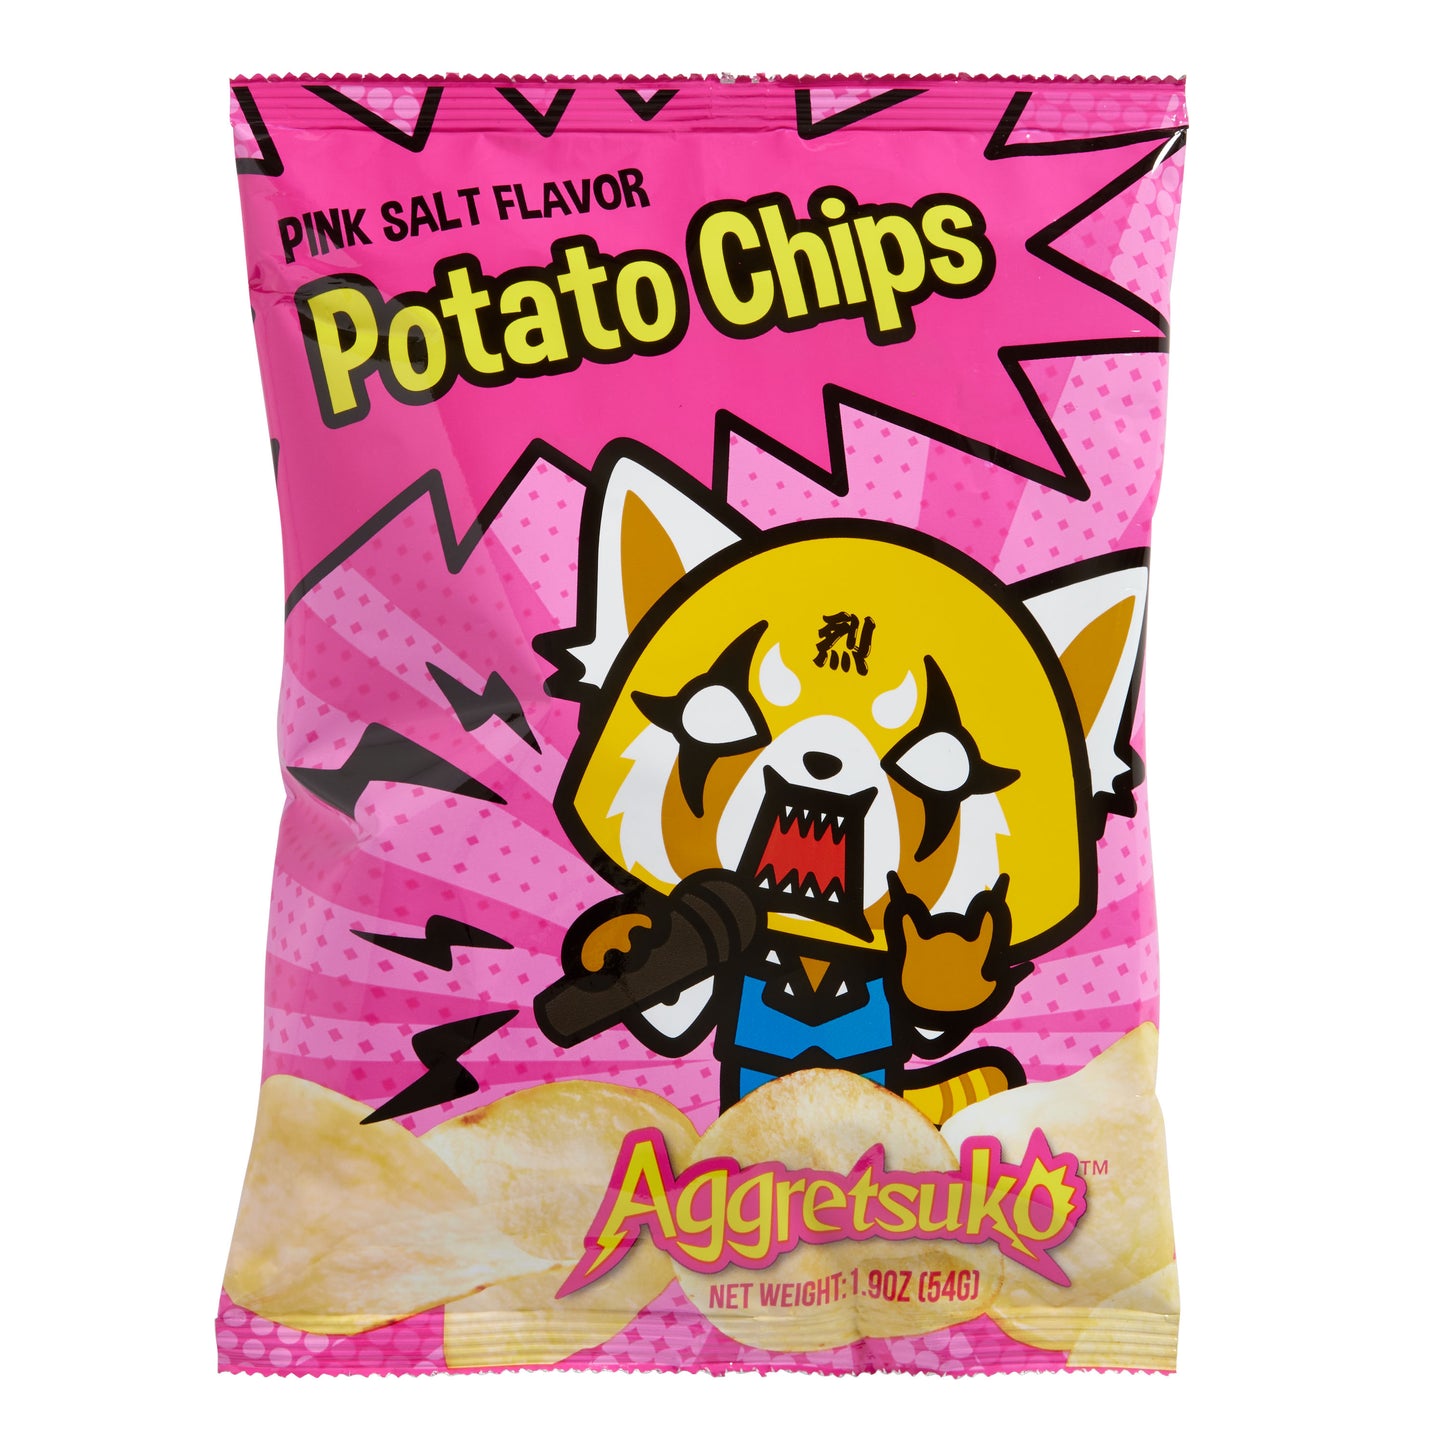 Aggretsuko Pink Salt Potato Chips